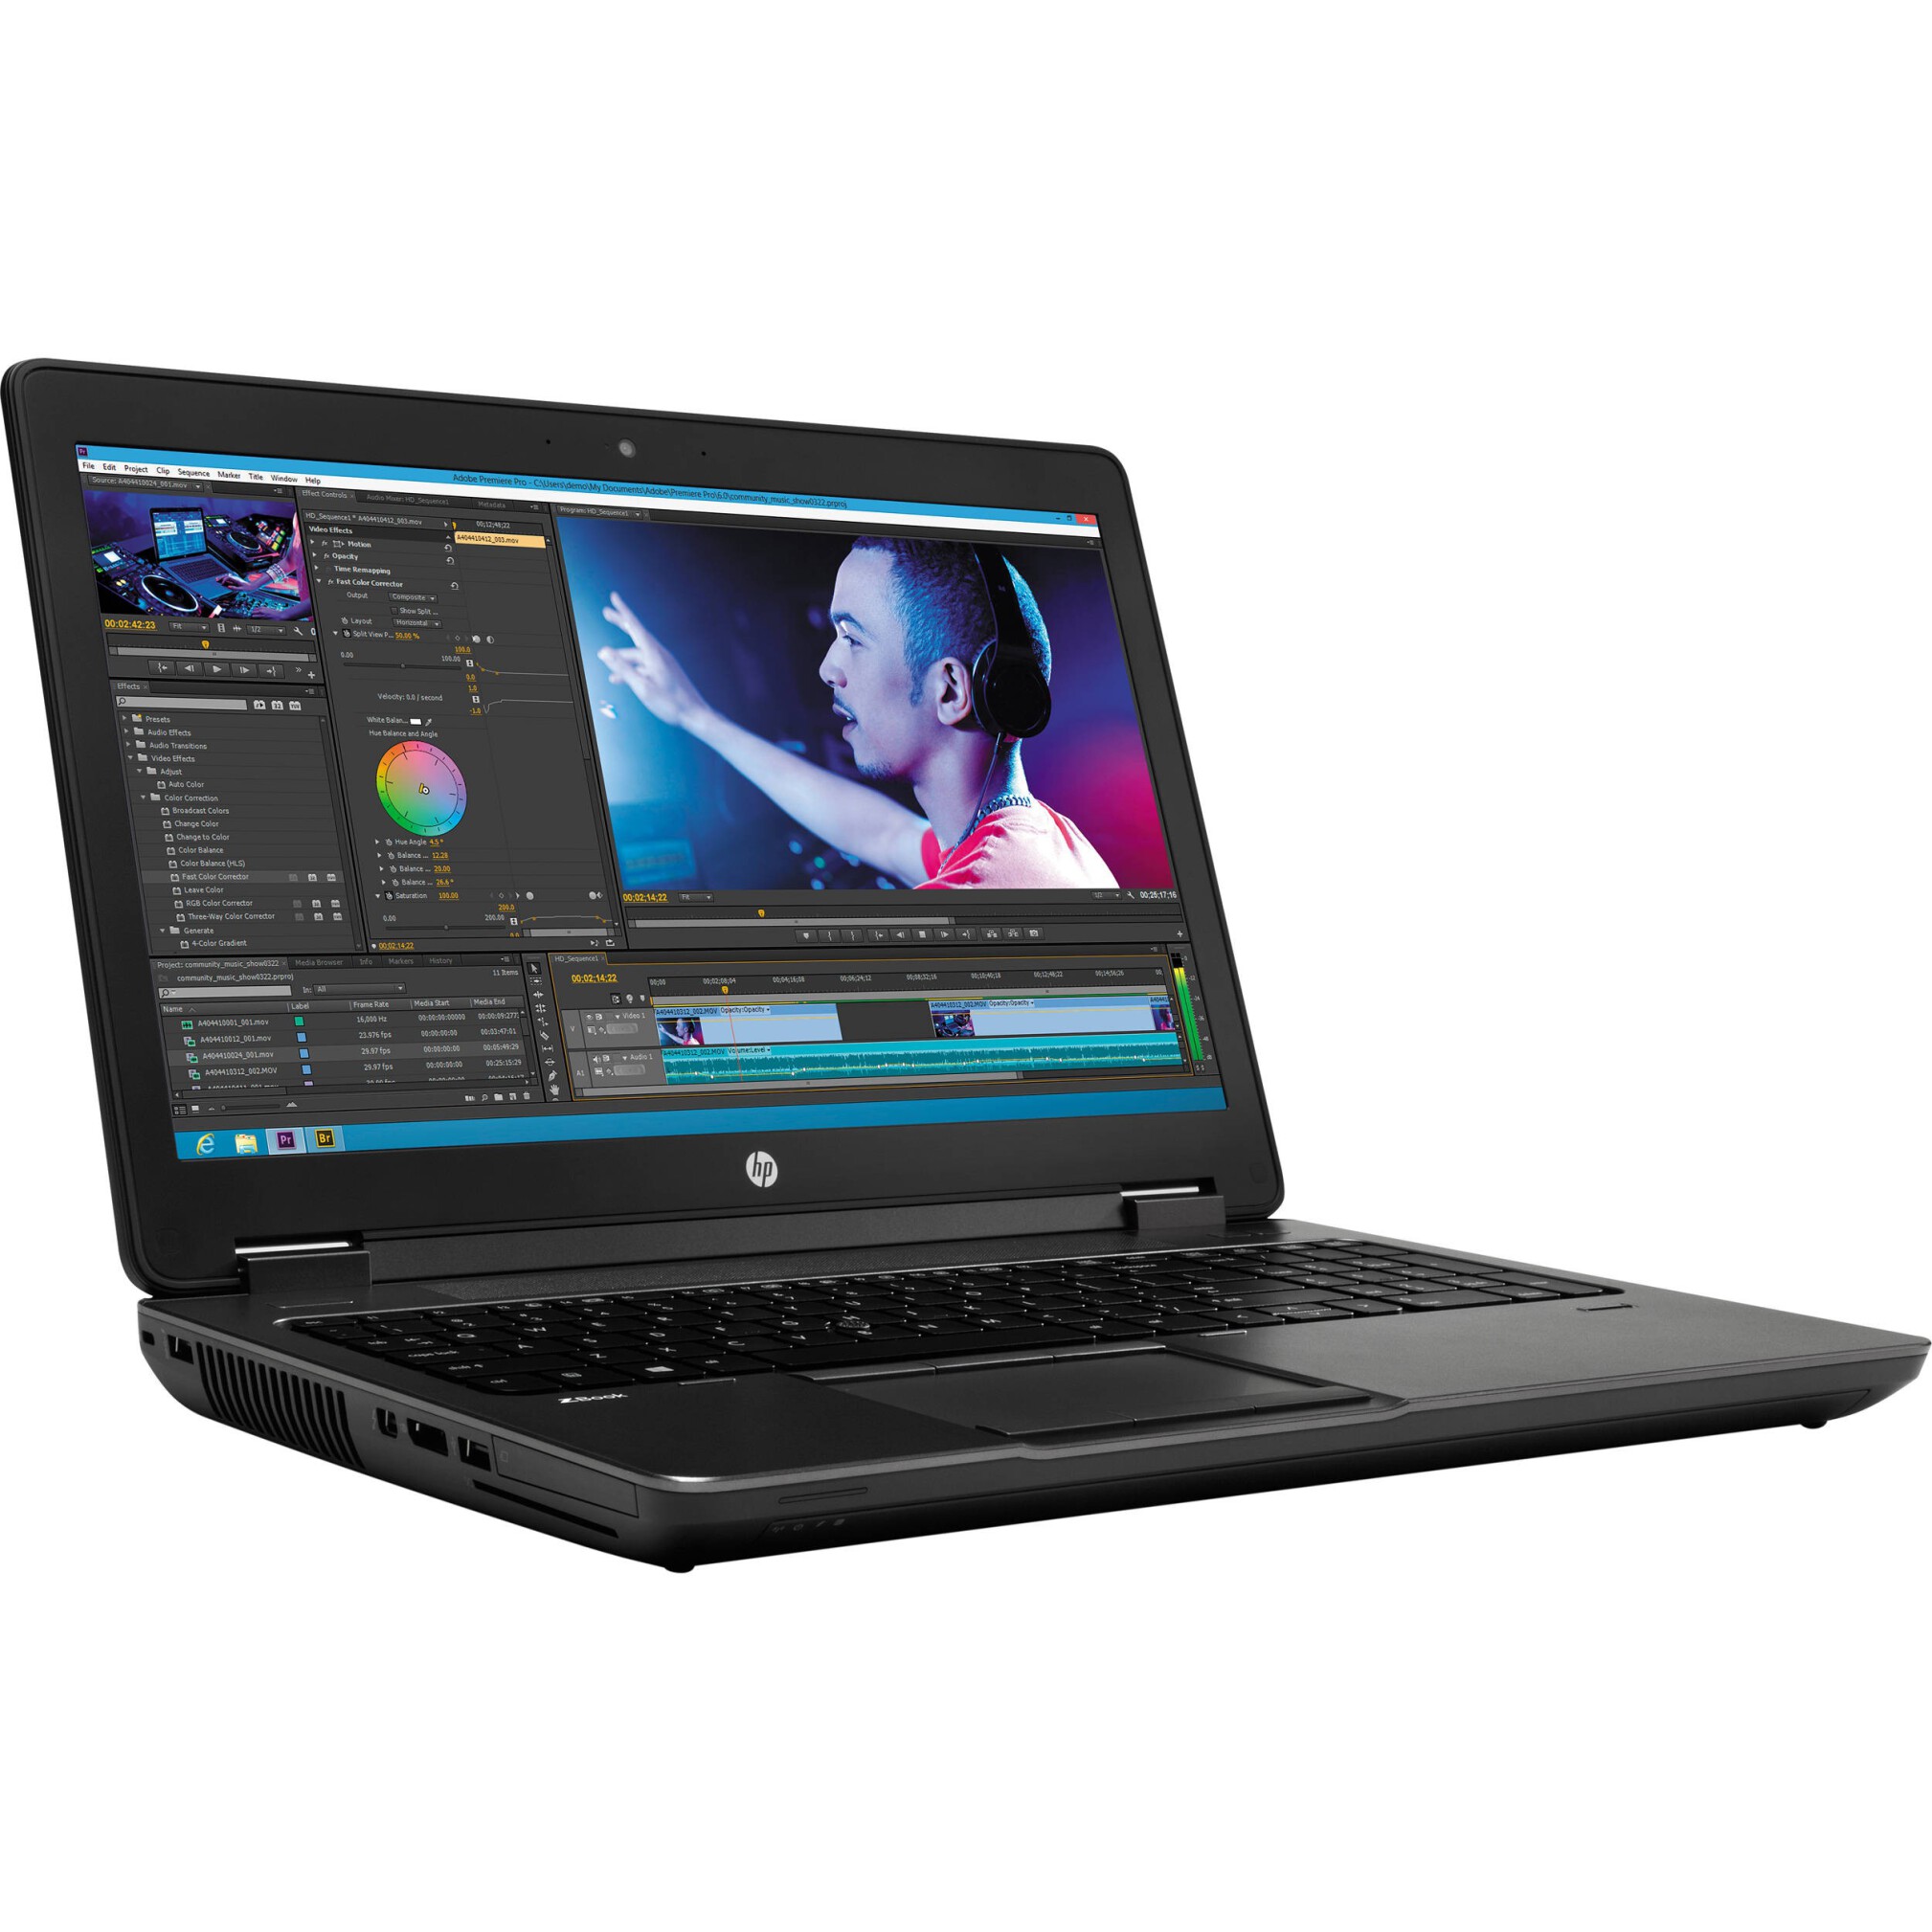  قیمت خرید و مشخصات لپ تاپ HP ZBOOK 15 G2 استوک اروپایی با مشخصات متفاوت موجود می باشد لاکچری لپ تاپ 